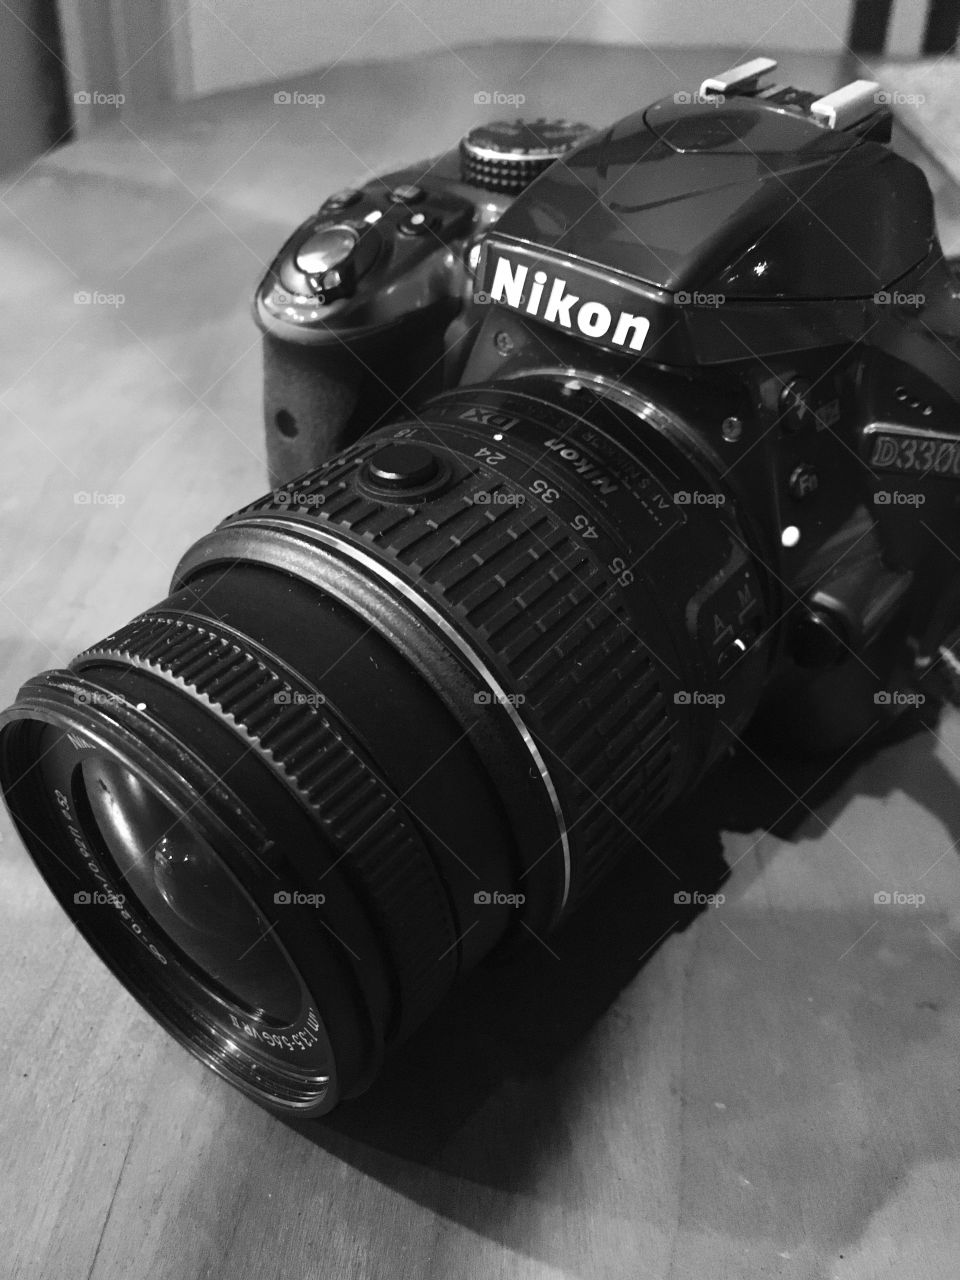 Black and white Nikon D3300 camera.